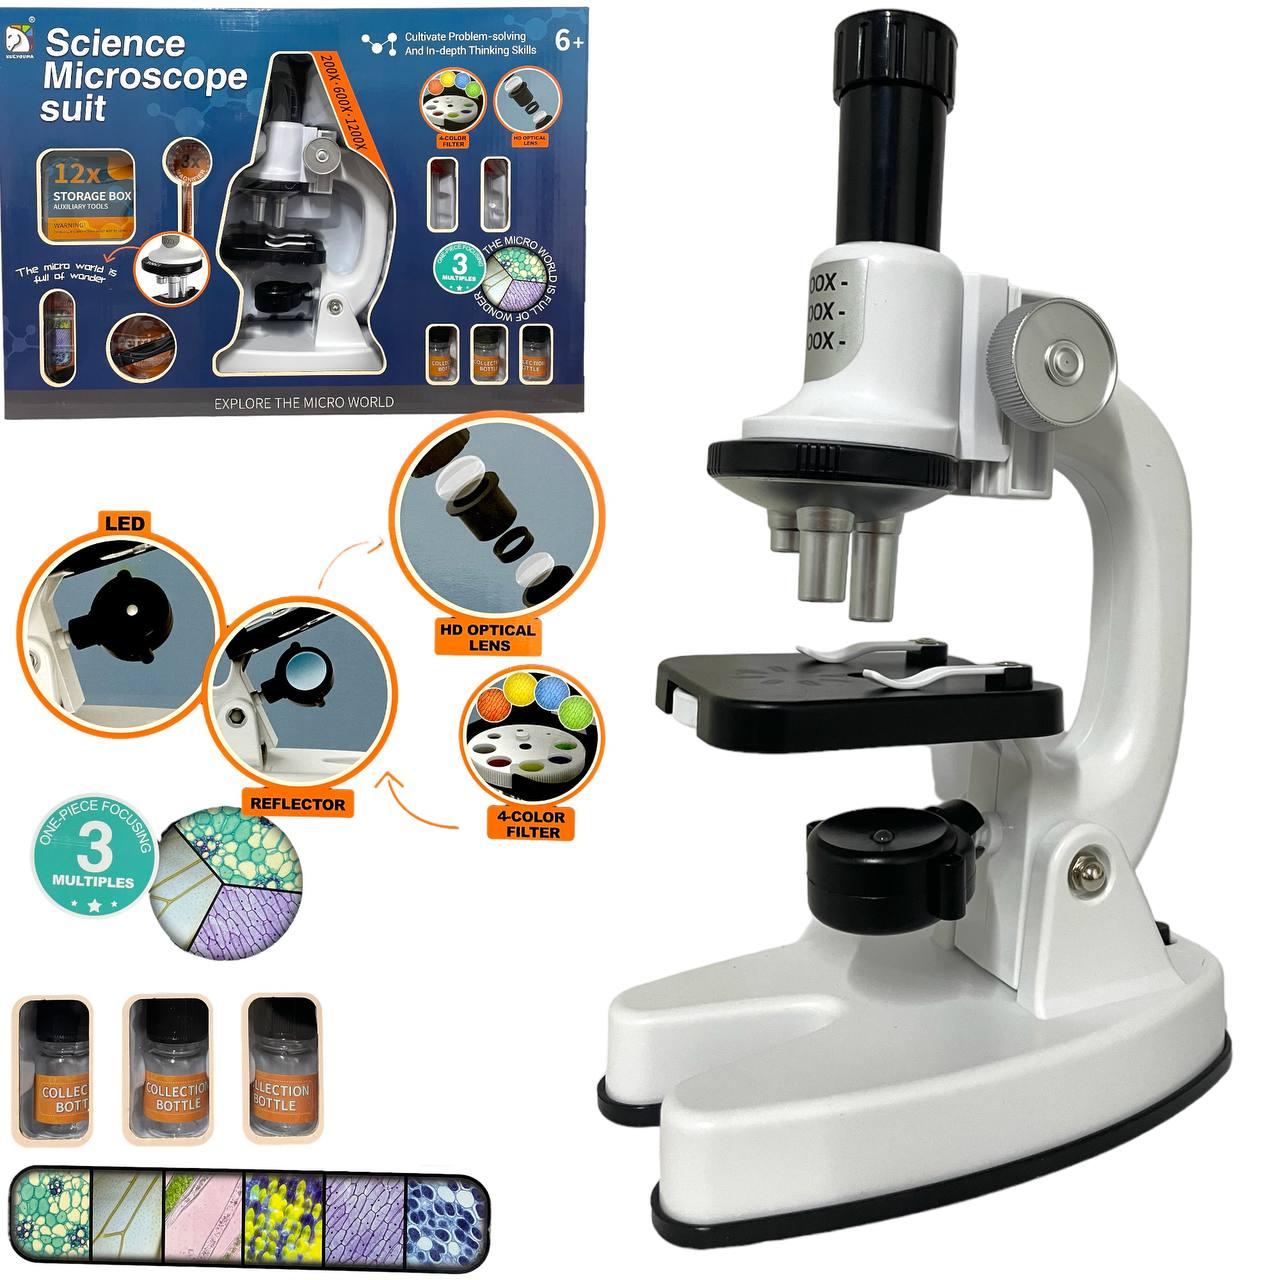 SD222 Микроскоп Science Microscope suit 41*29см